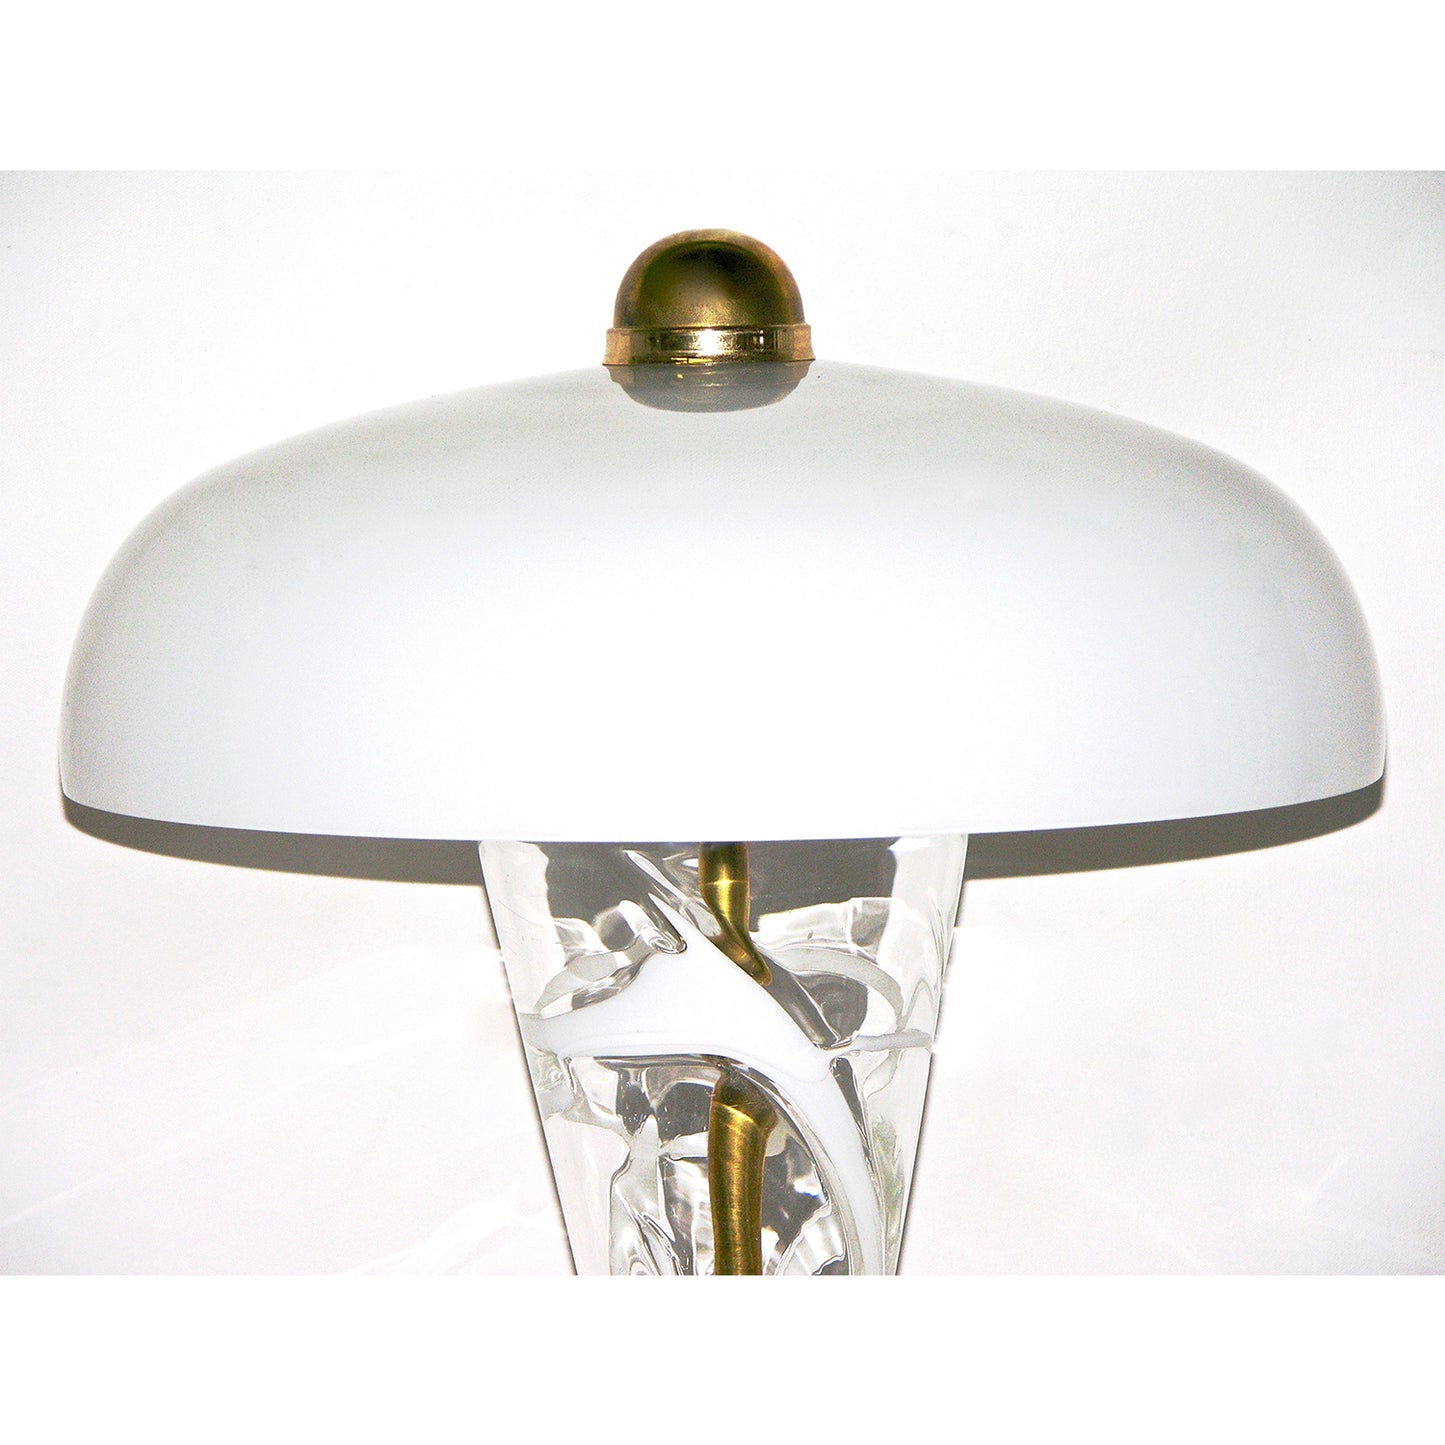 1970s Italian Murano Glass Lamp Attributed to Vistosi